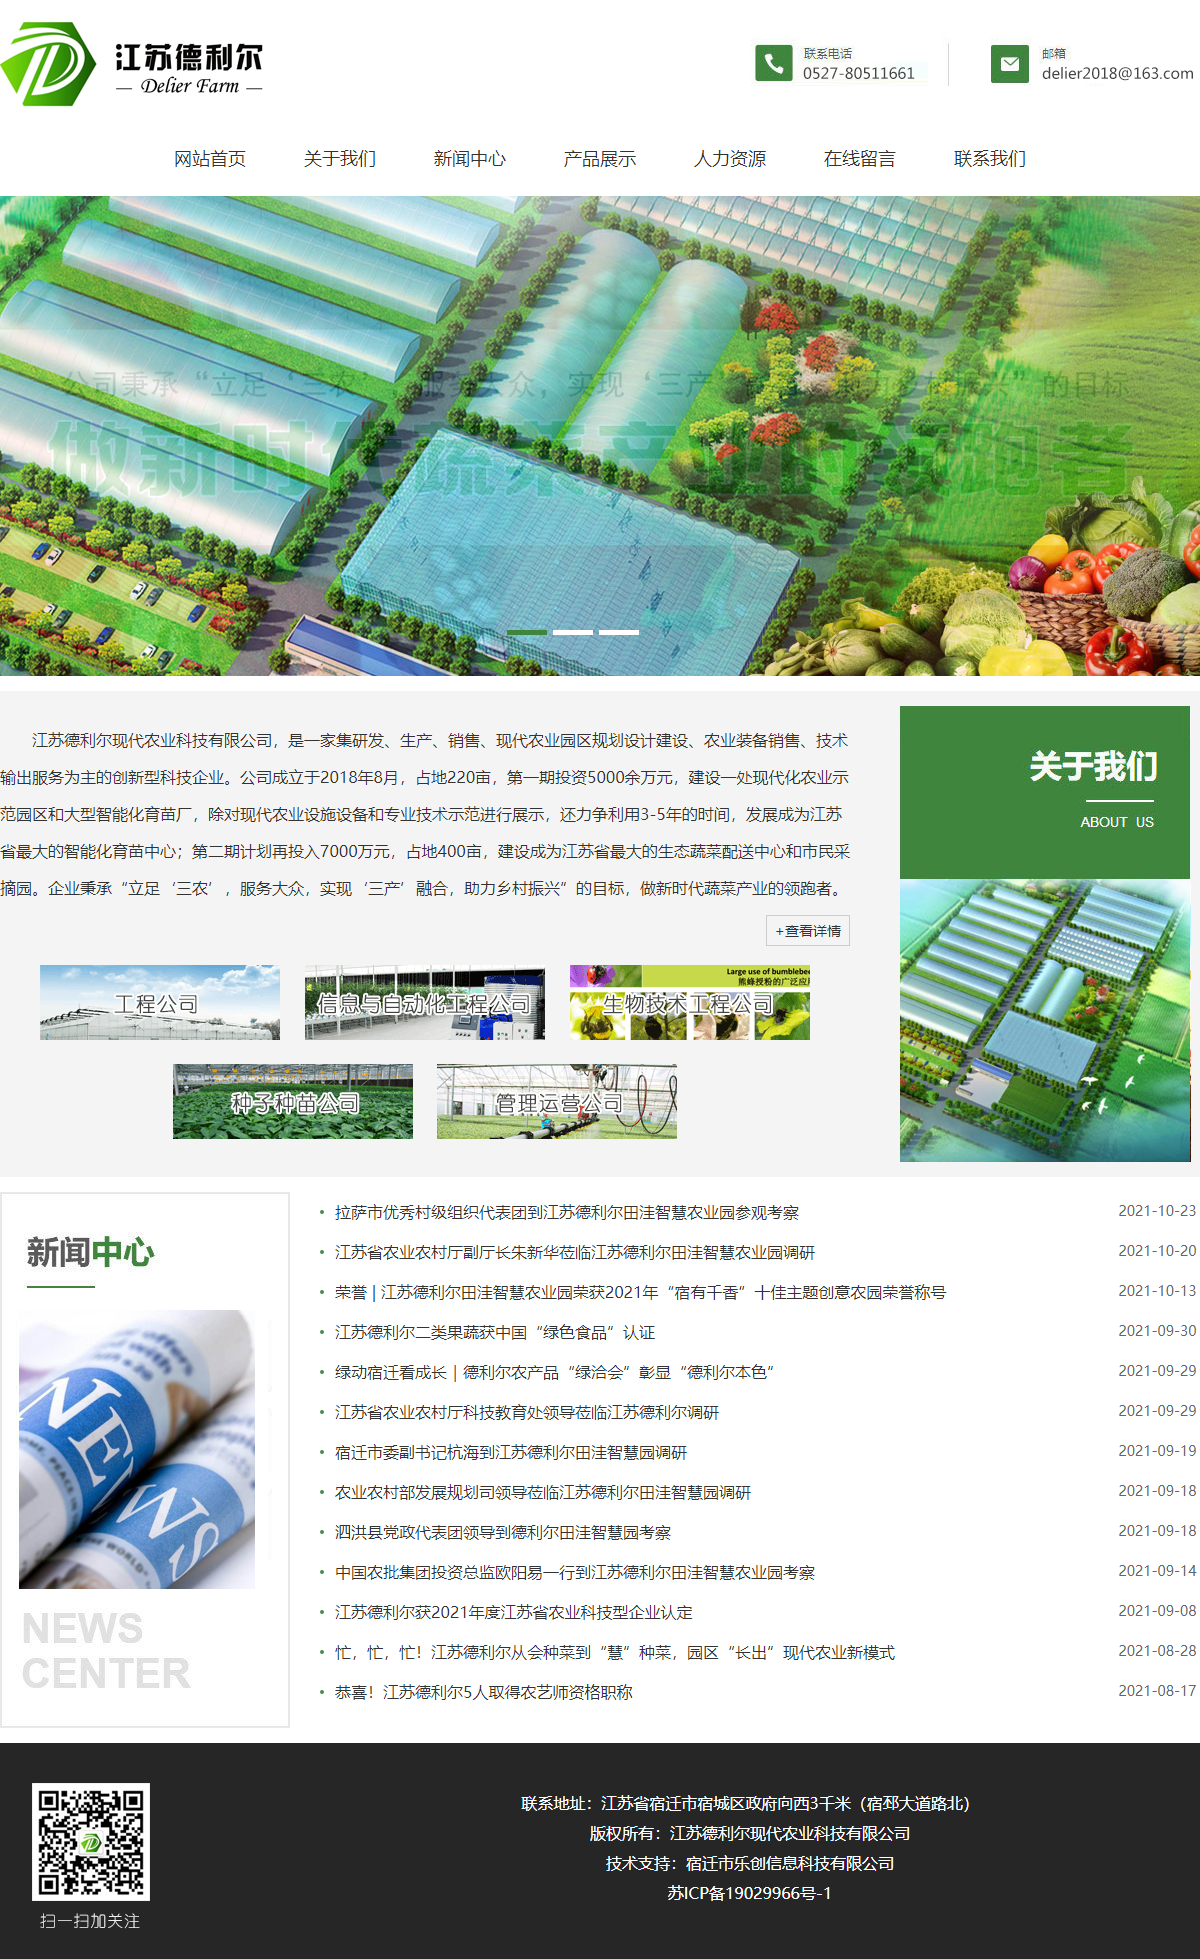 江苏德利尔现代农业科技有限公司网站案例